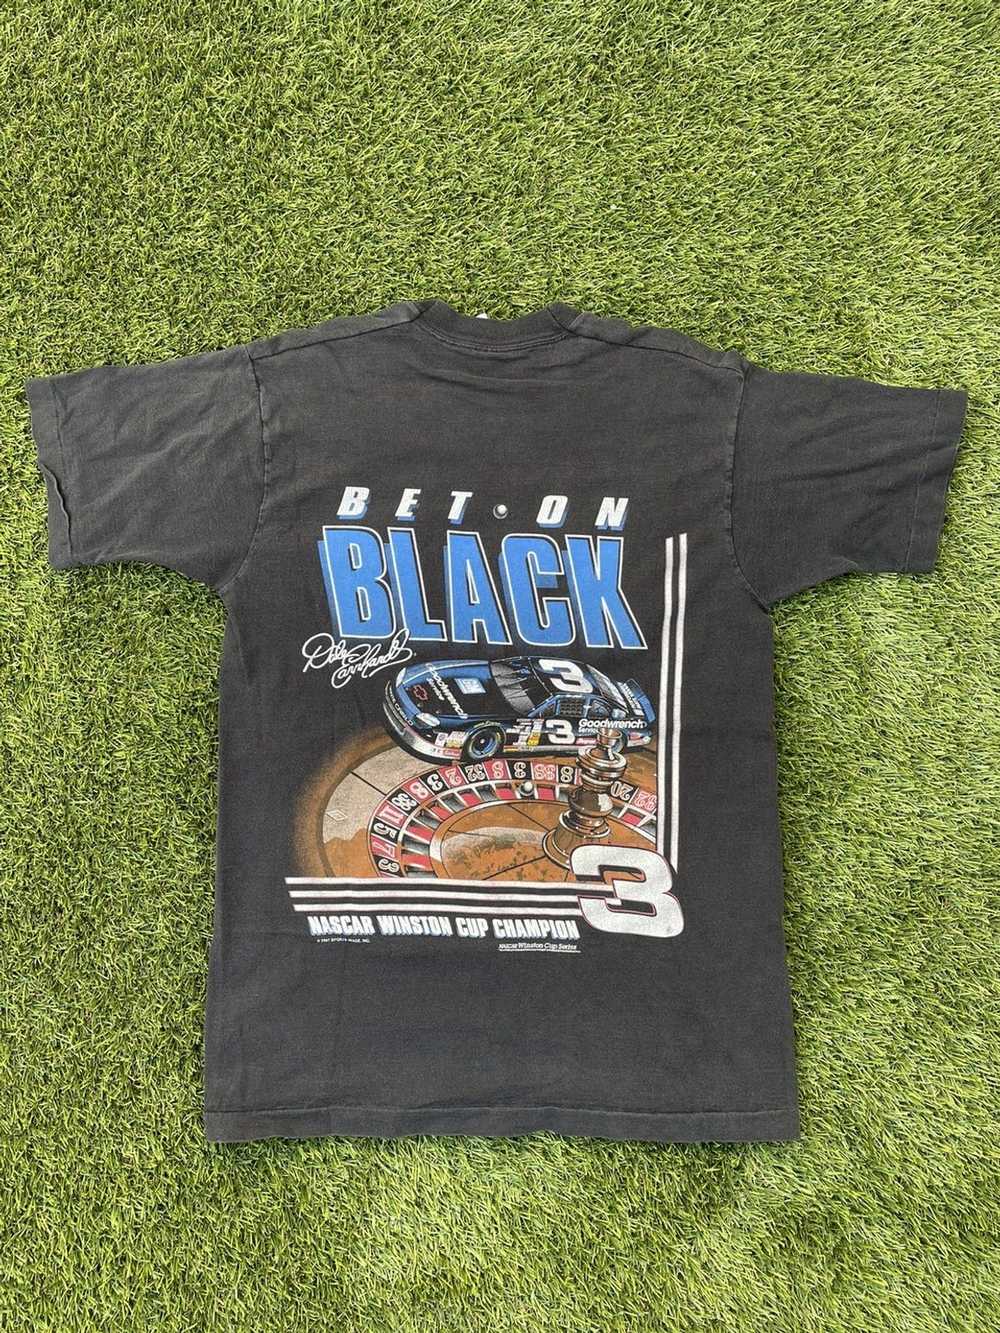 NASCAR × Vintage 1997 Dale Earnhardt Bet On Black - image 3